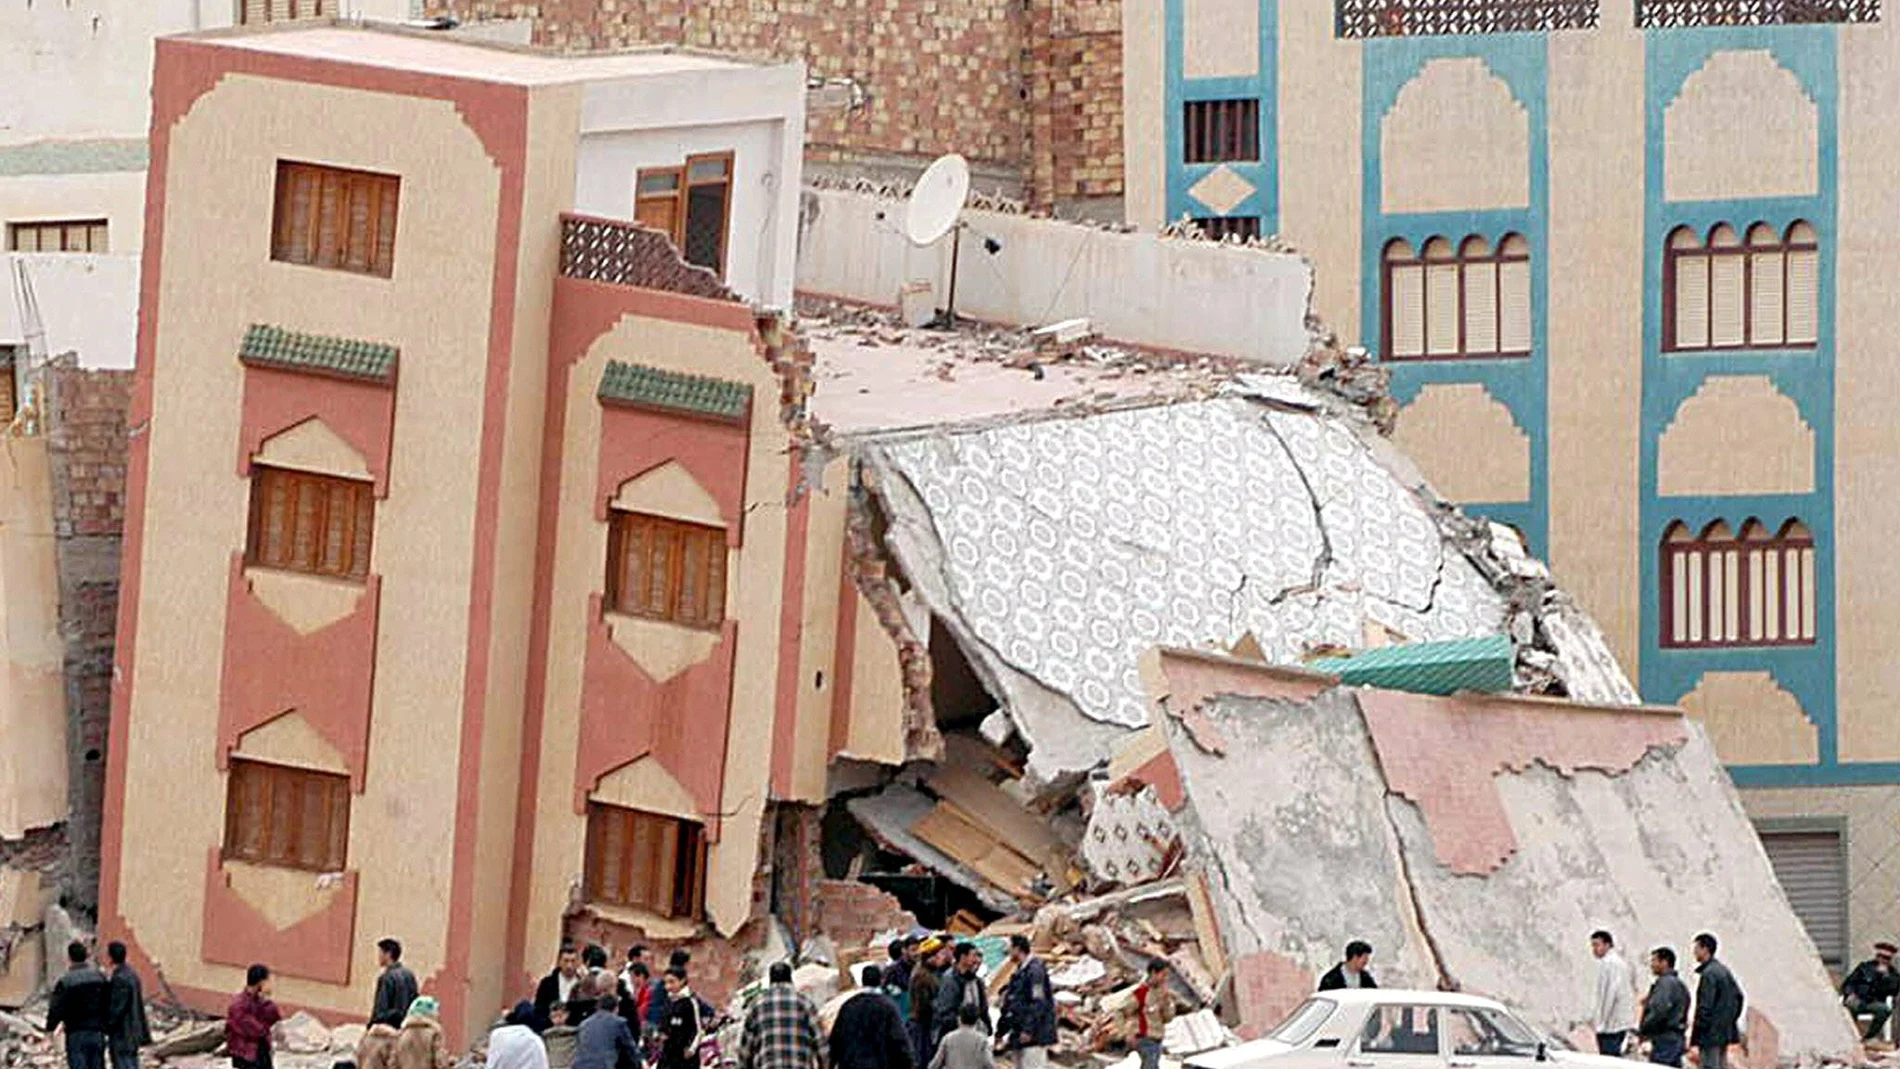 Vecinos de la localidad marroquí de Izemuren junto a uno de los edificios derrumbado a causa de un seismo. Un fuerte terremoto de 6,3 grados en la escala abierta de Richter sacudió el 24 de febrero de 2004 el norte de Marruecos y causó la muerte de al menos 229 personas en las aldeas próximas a la ciudad de Alhucemas.